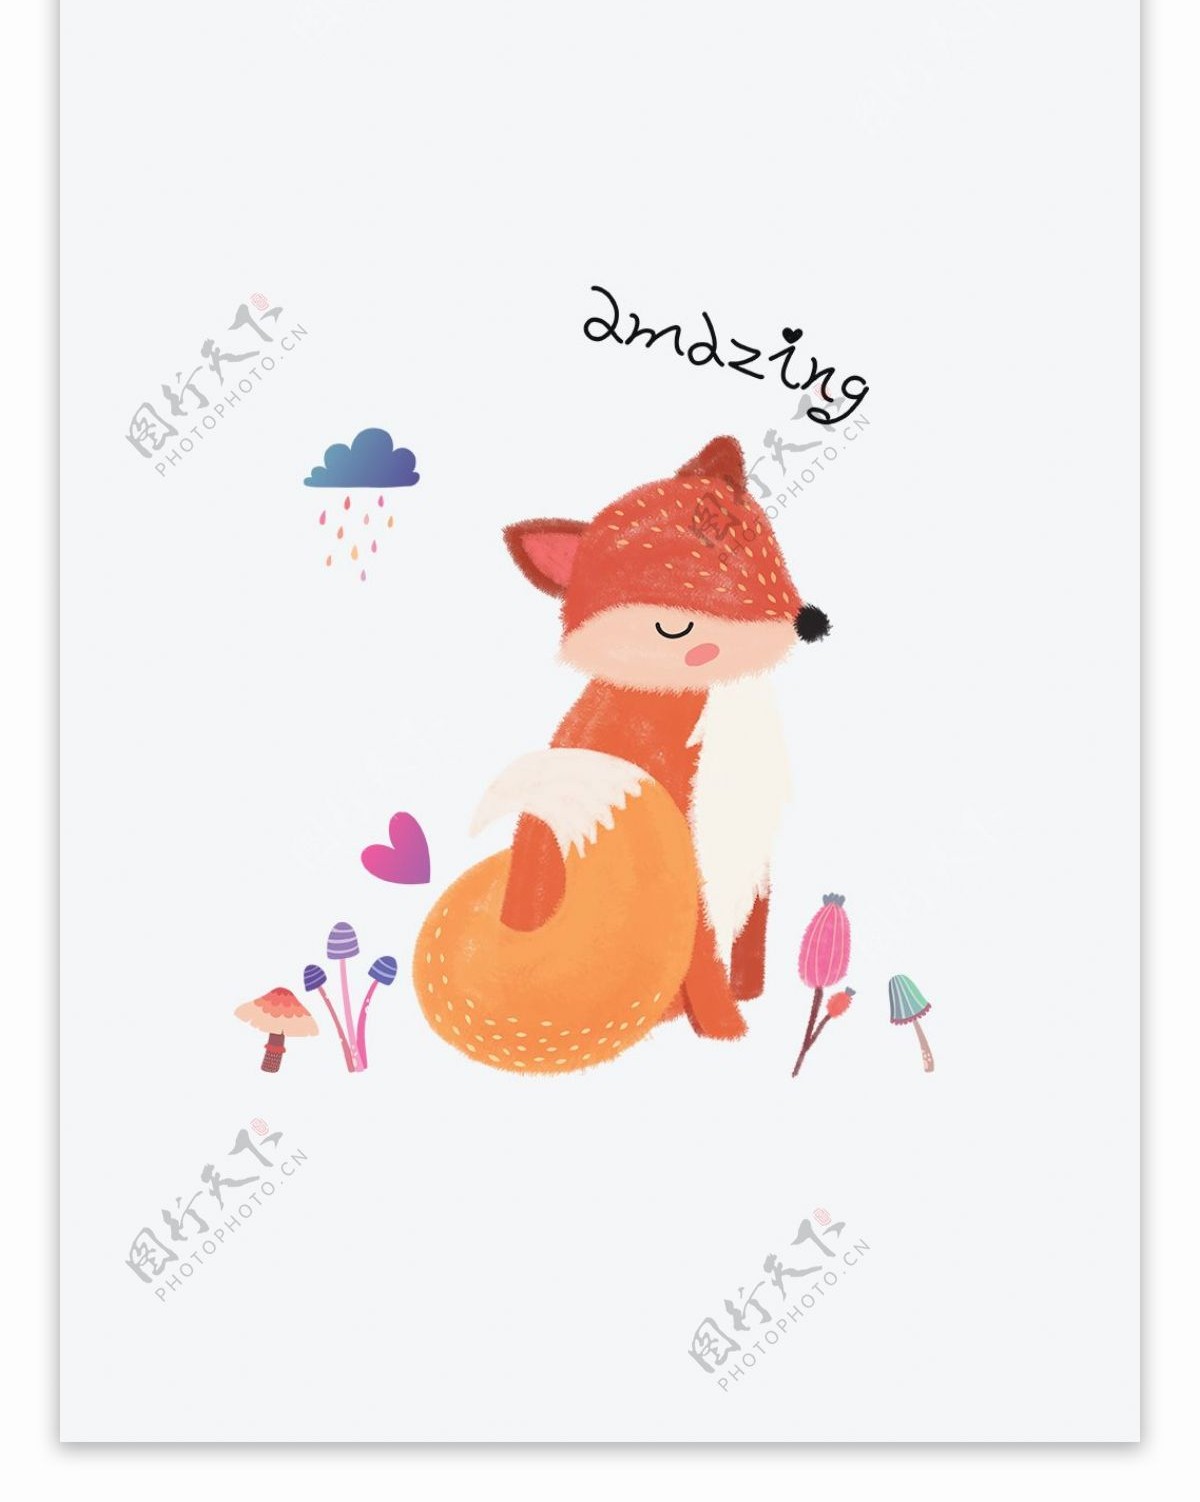 原创手绘简约狐狸动物帆布袋设计